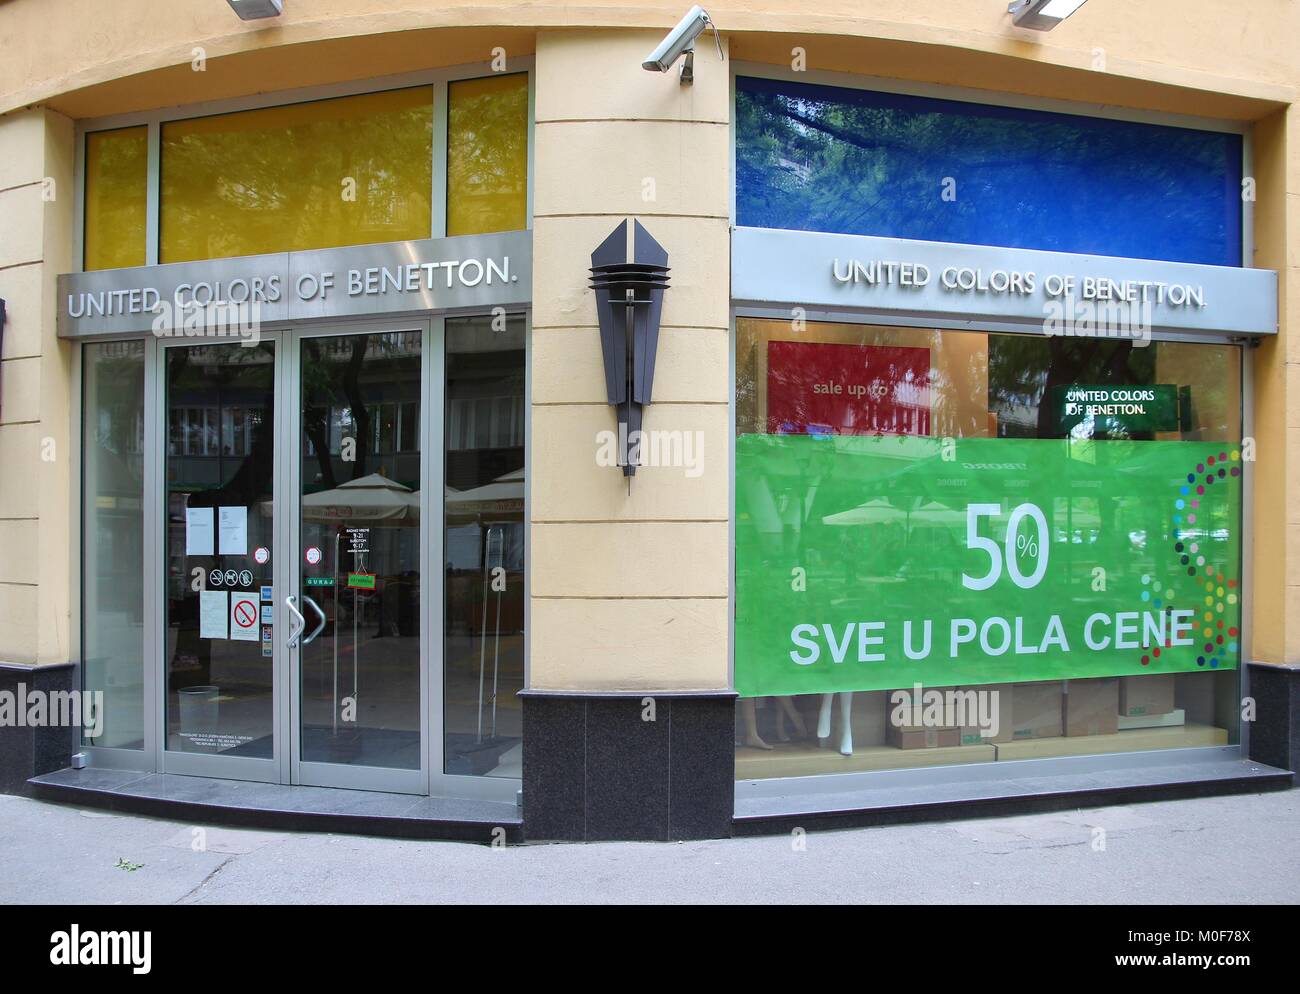 SUBOTICA, Serbien - 12. August: Die vereinigten Farben der Benetton store am 12. August 2012 in Subotica, Serbien. Benetton ist eine globale Luxus mode Marke mit 6. Stockfoto